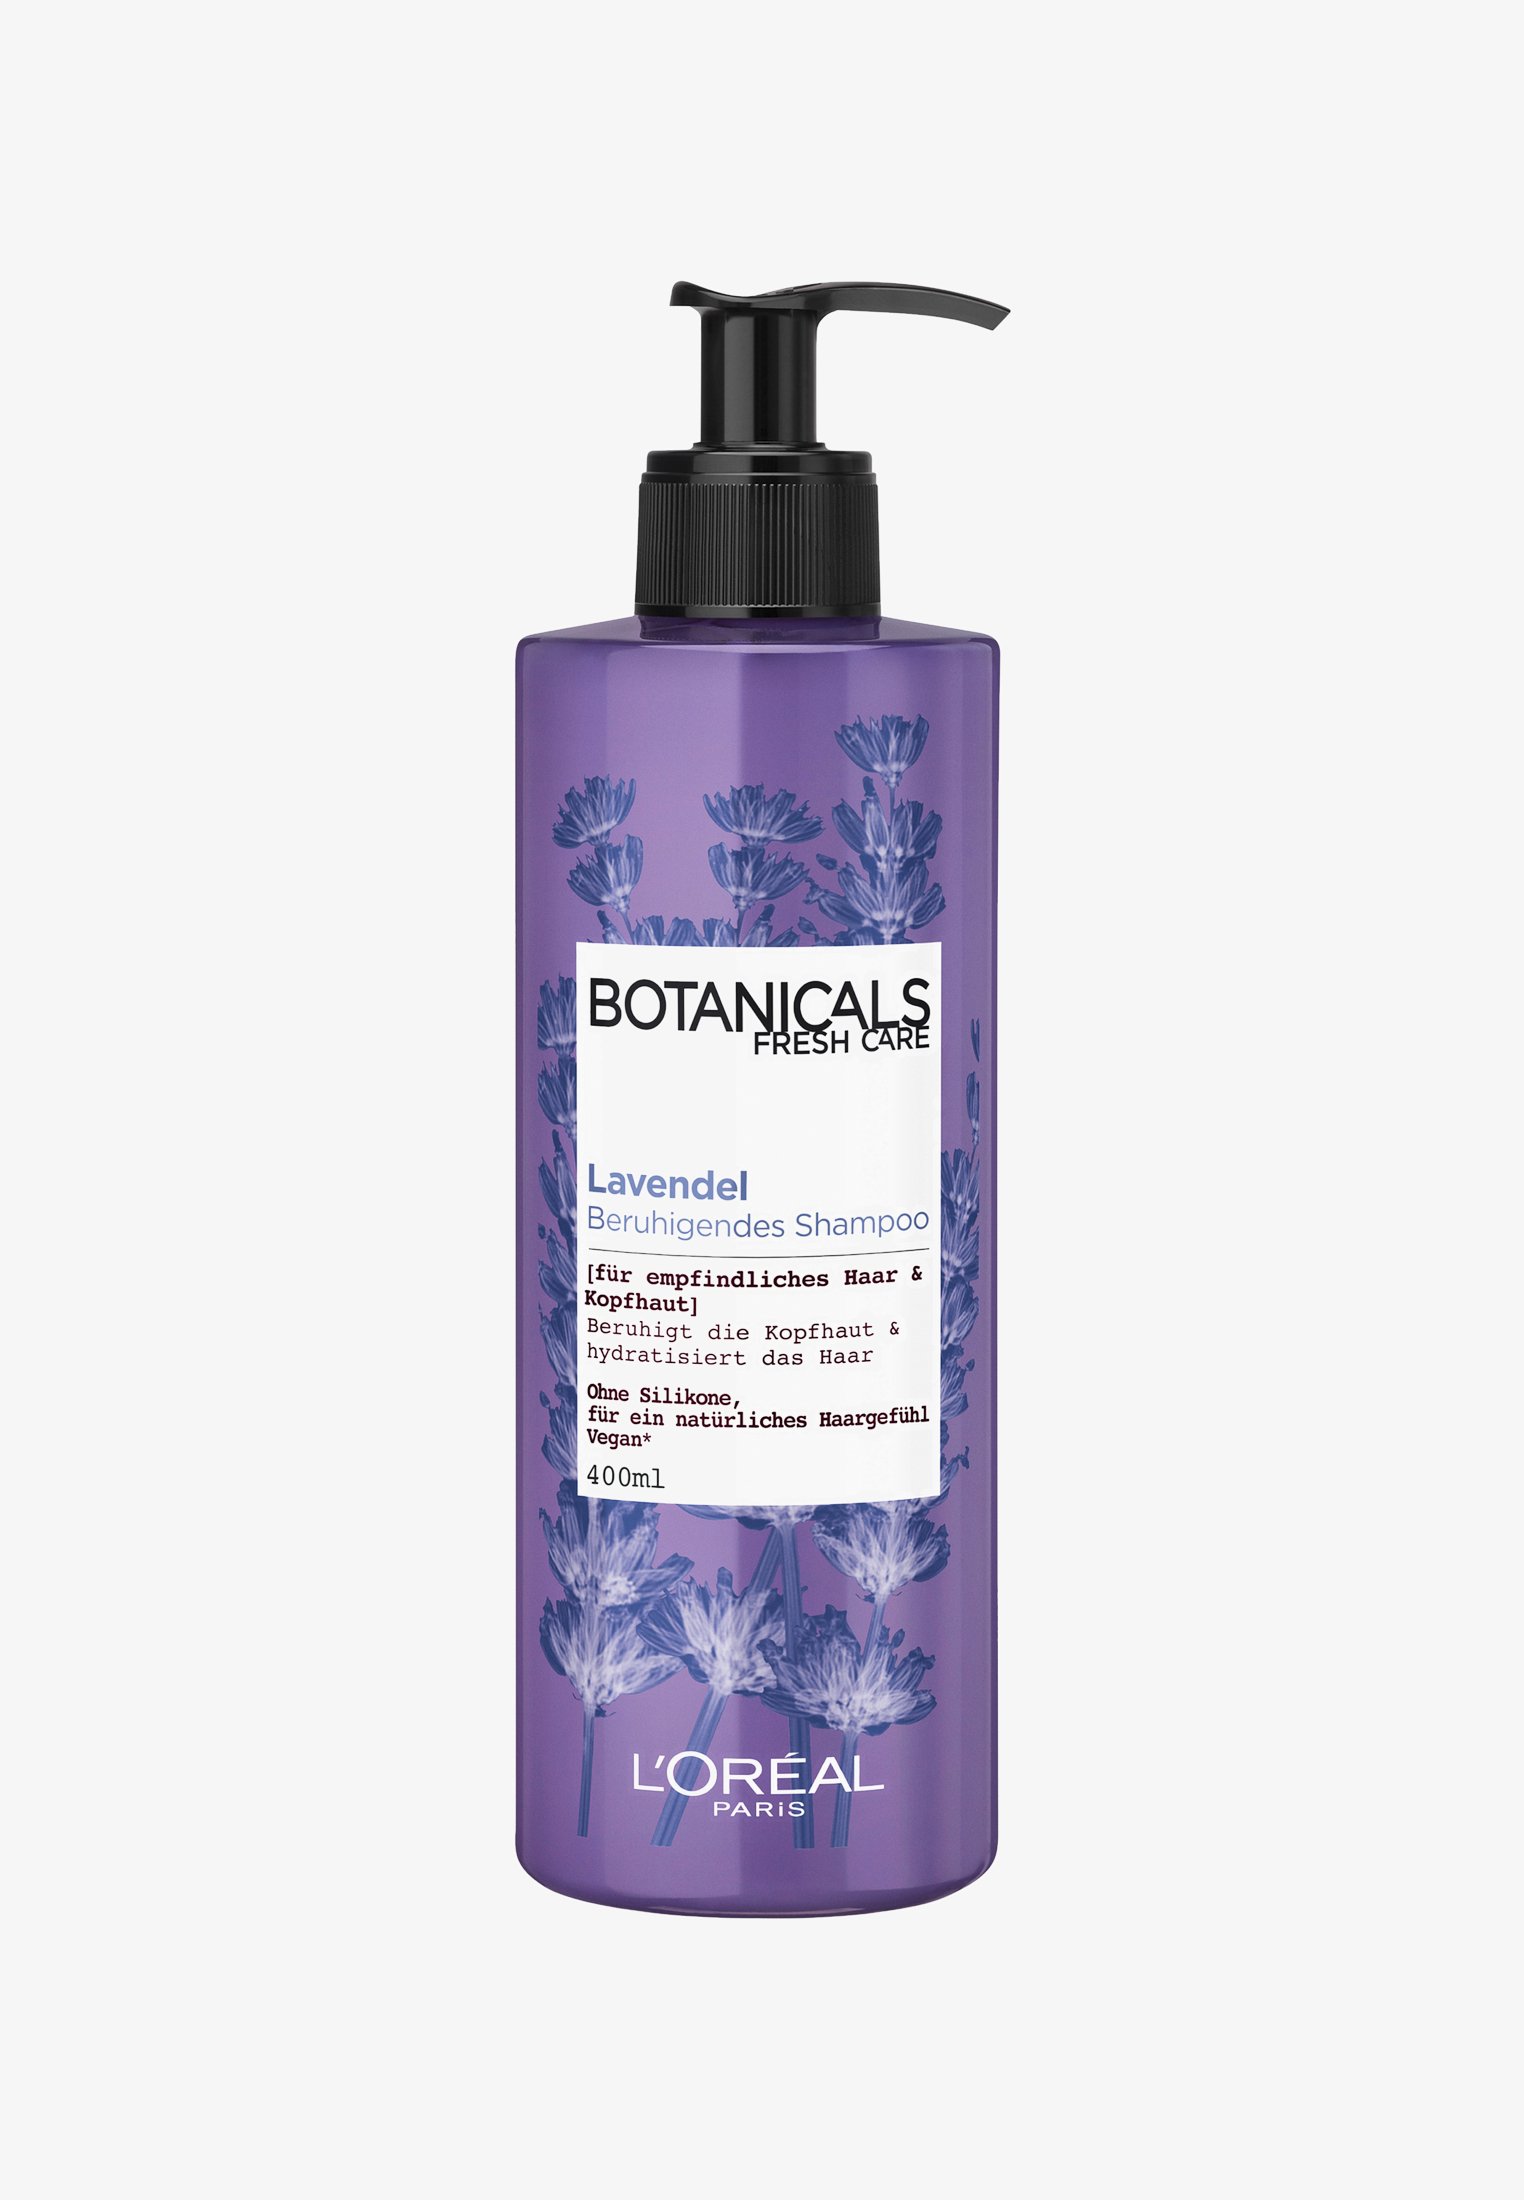 szampon do włosów botanicals fresh care